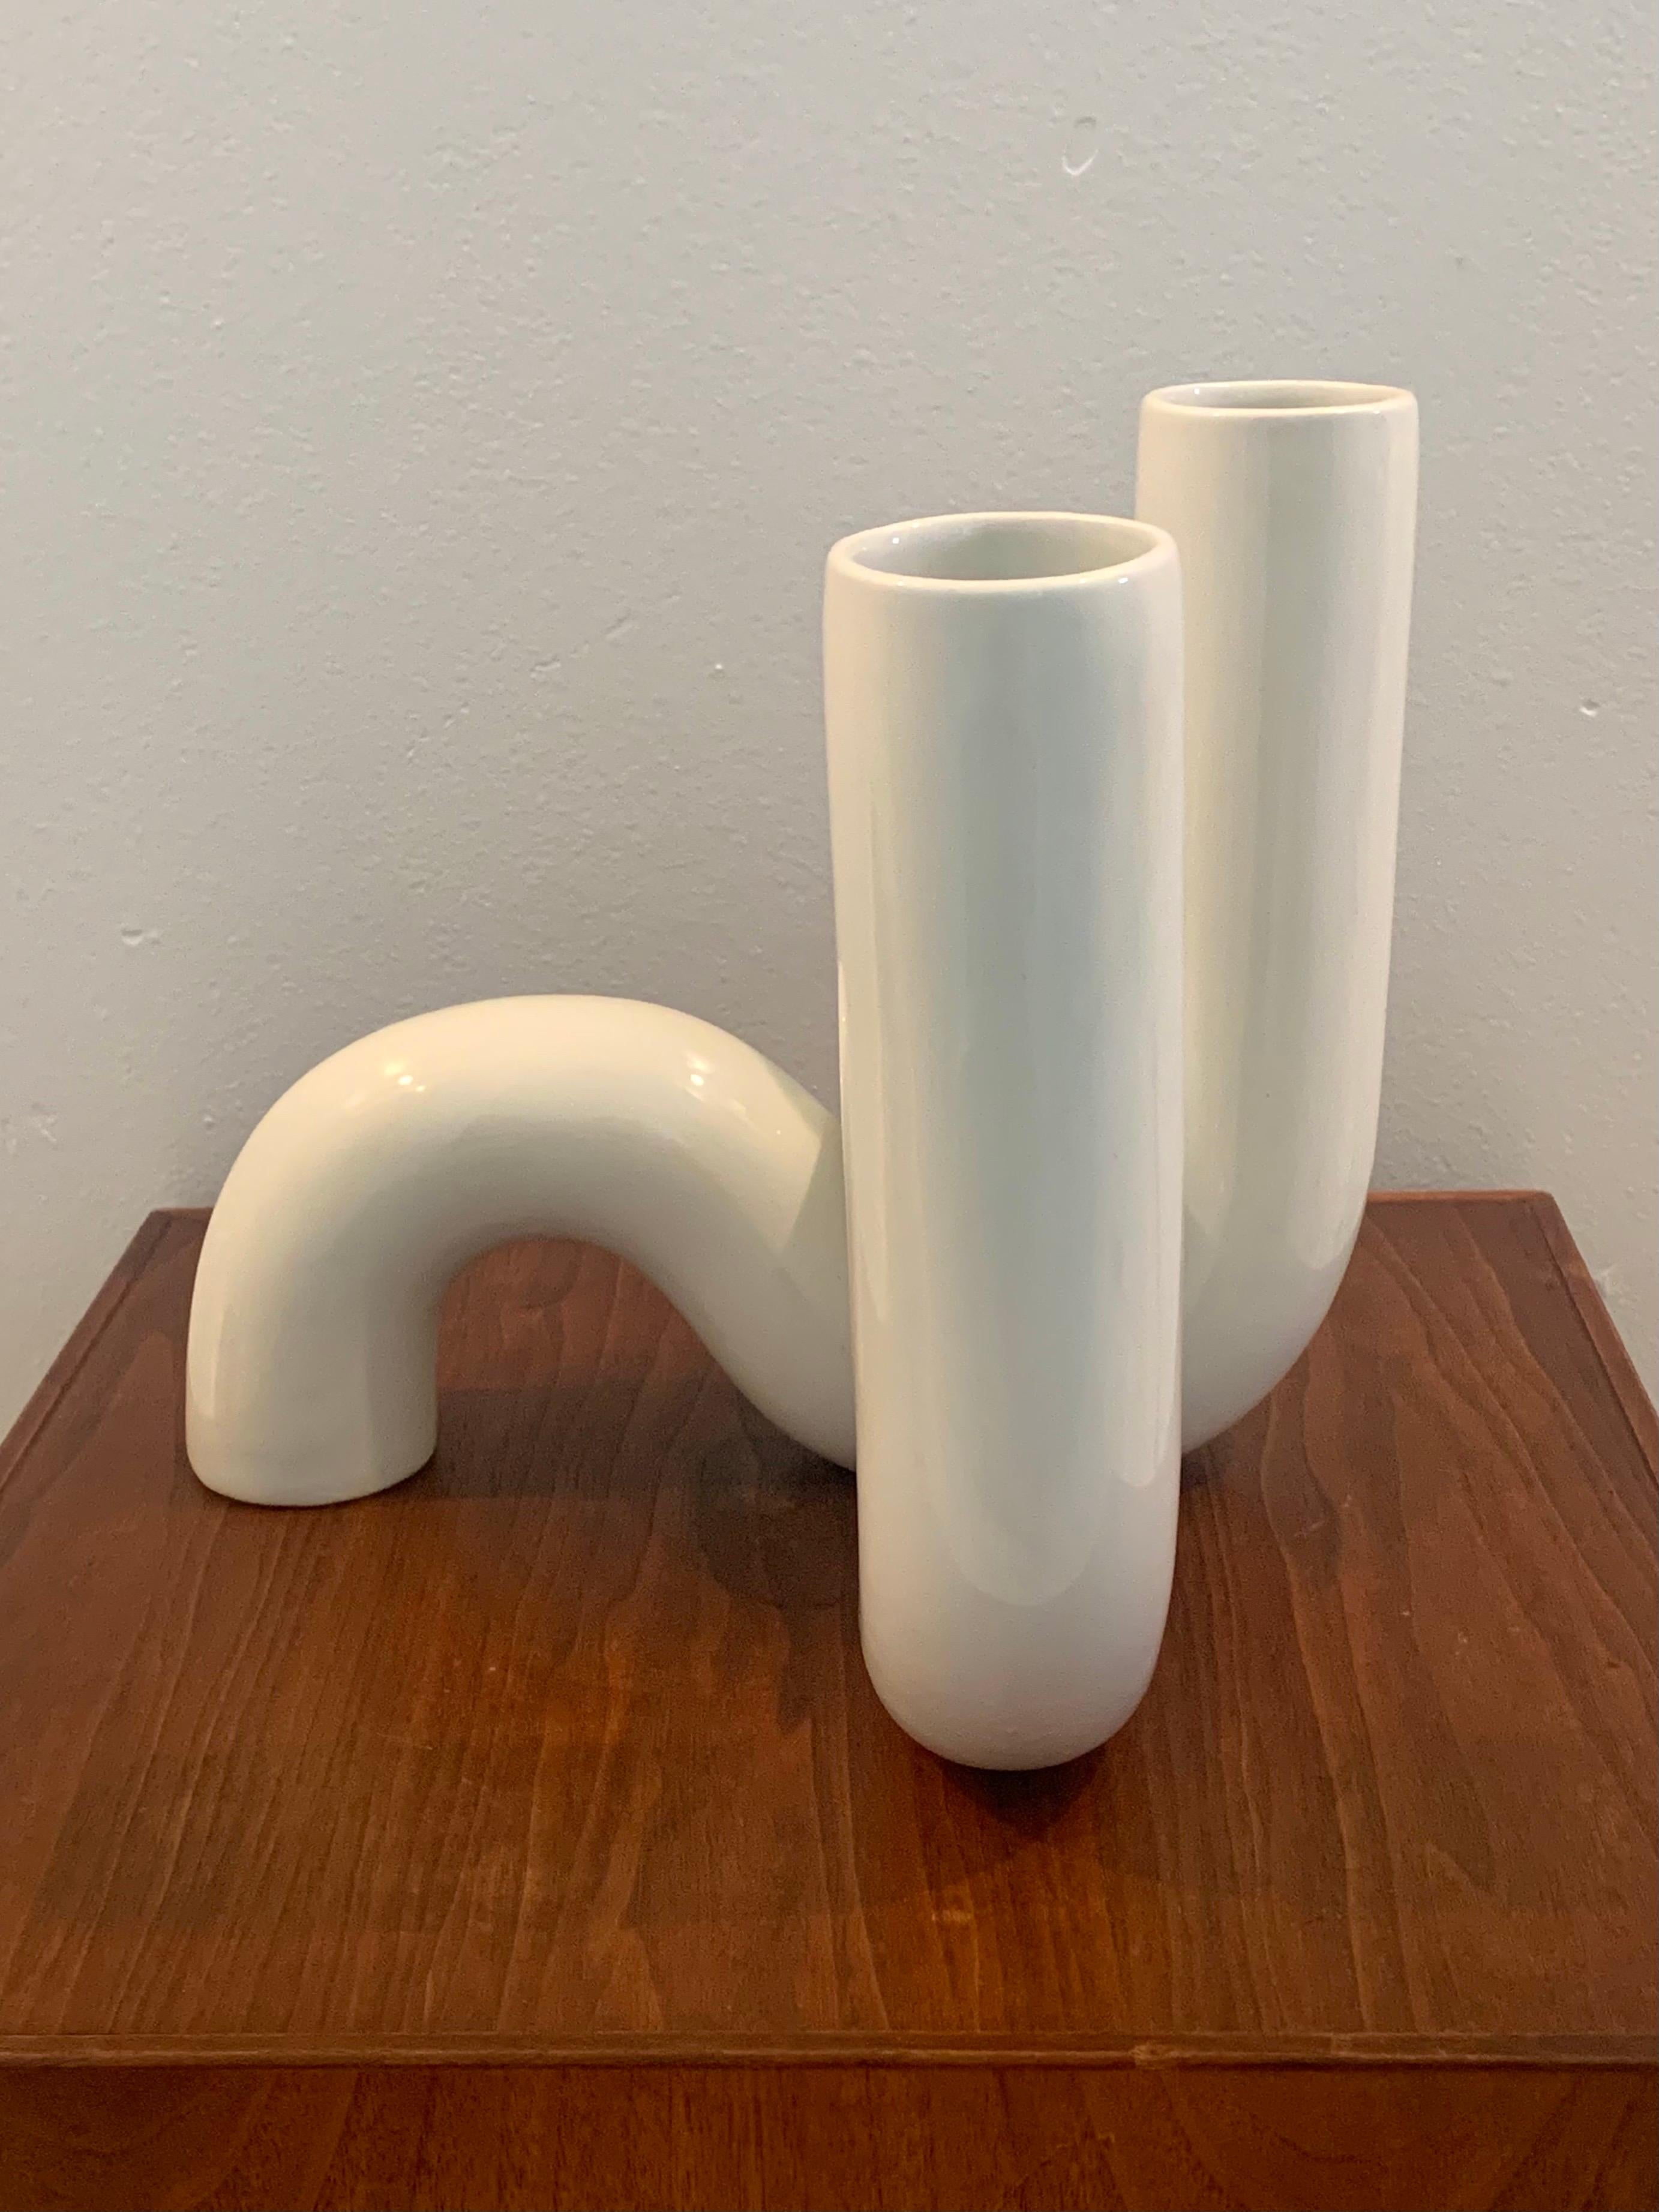 Alvino Bagni for Raymor “Tubo” Vases, Pair 1